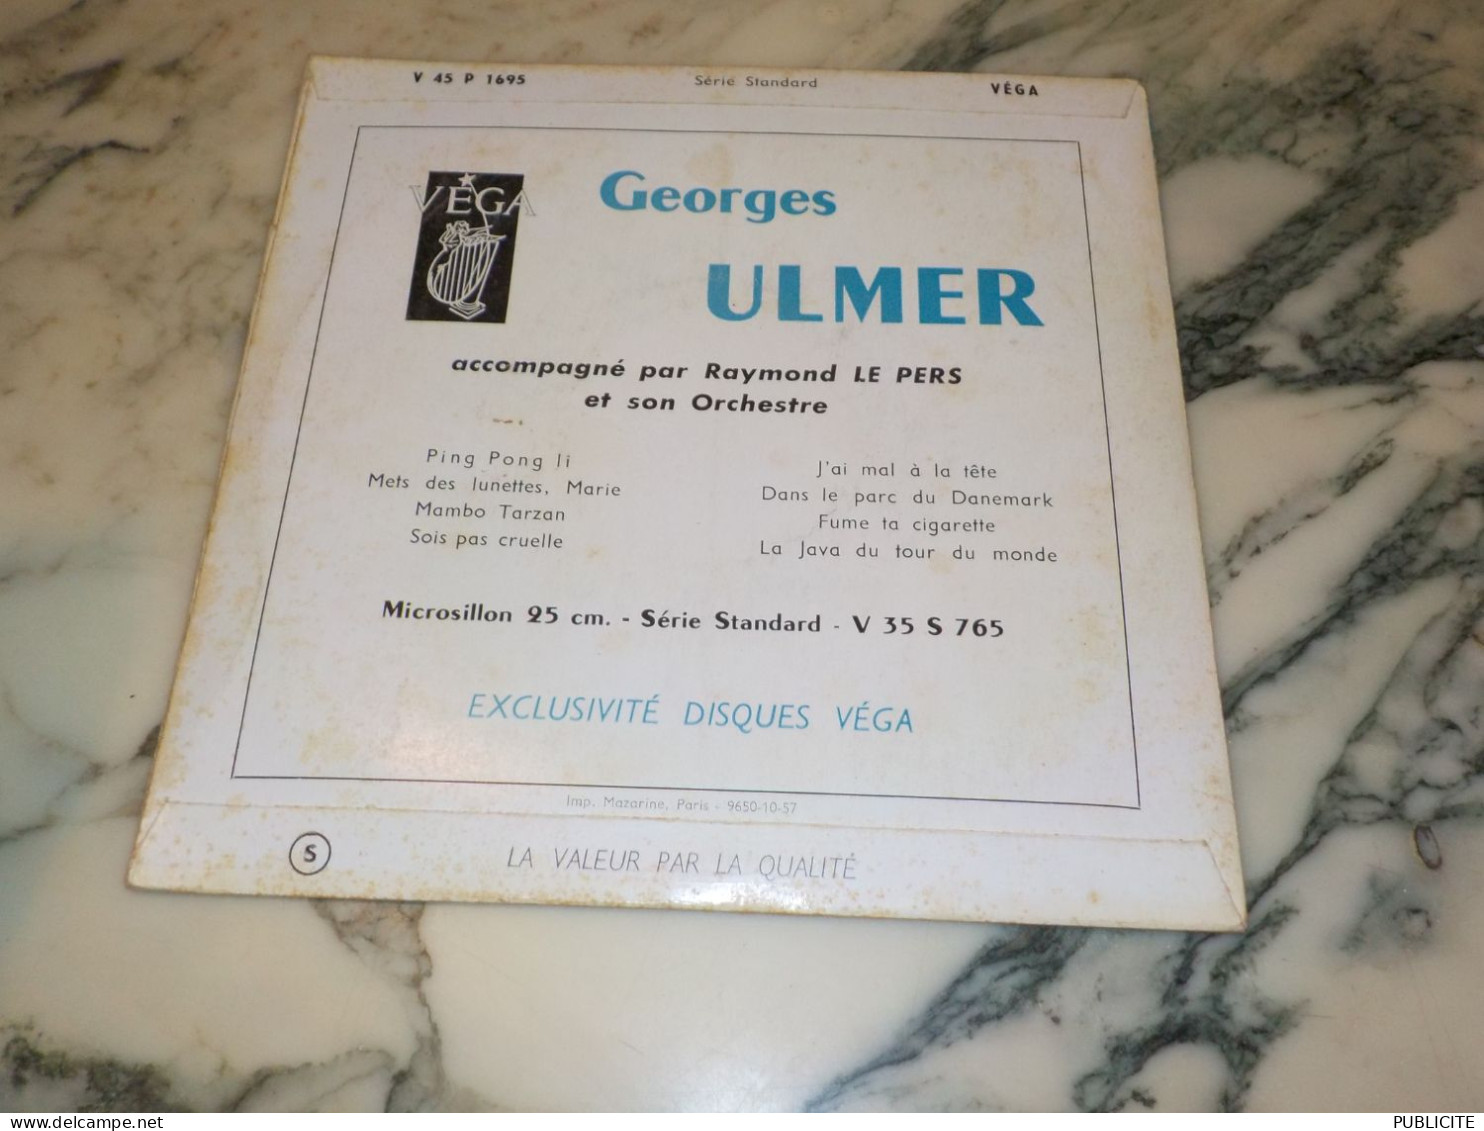 45 TOURS DANS LE PARC DU DANEMARK GEORGE ULMER 1956 - Comiques, Cabaret